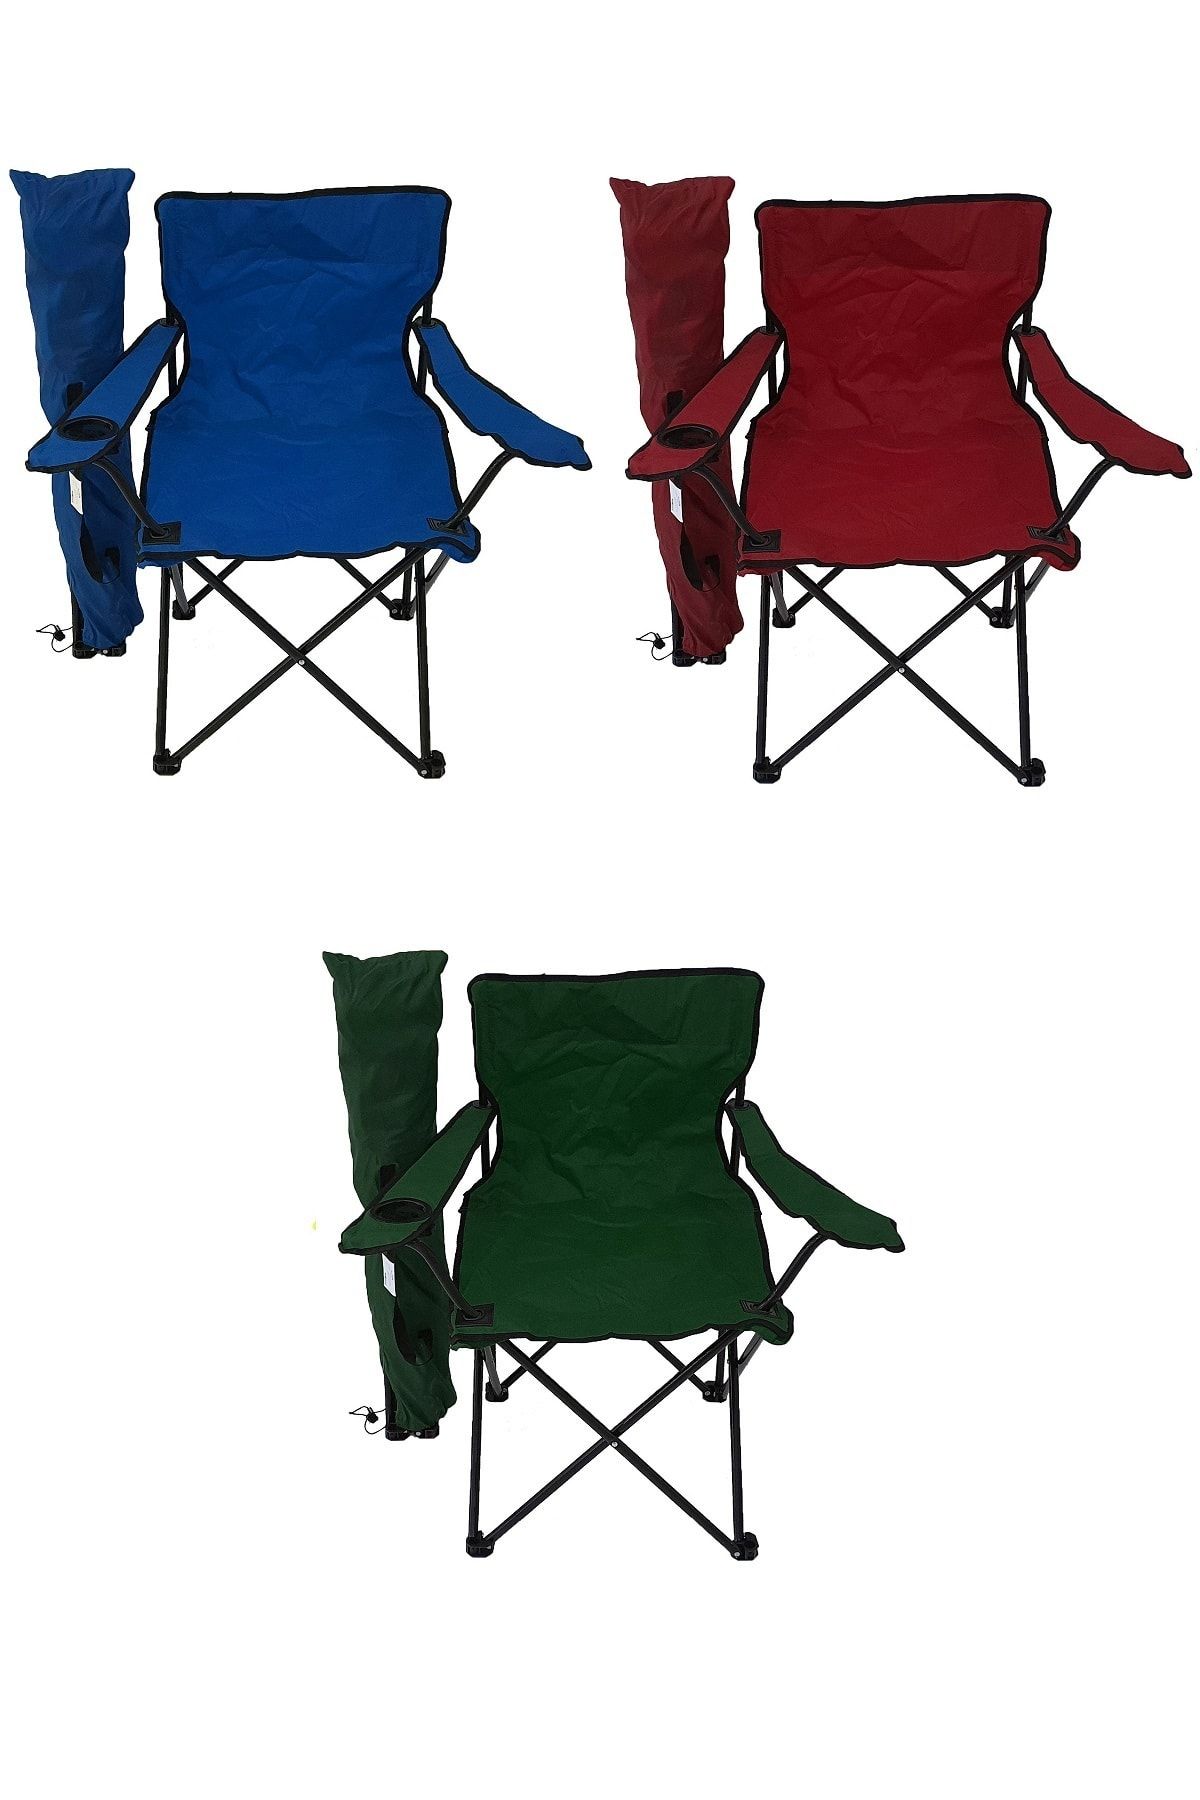 Bofigo 3 Adet Kamp Sandalyesi Katlanır Sandalye Bahçe Koltuğu Piknik Plaj Sandalyesi Düz Renk Karma